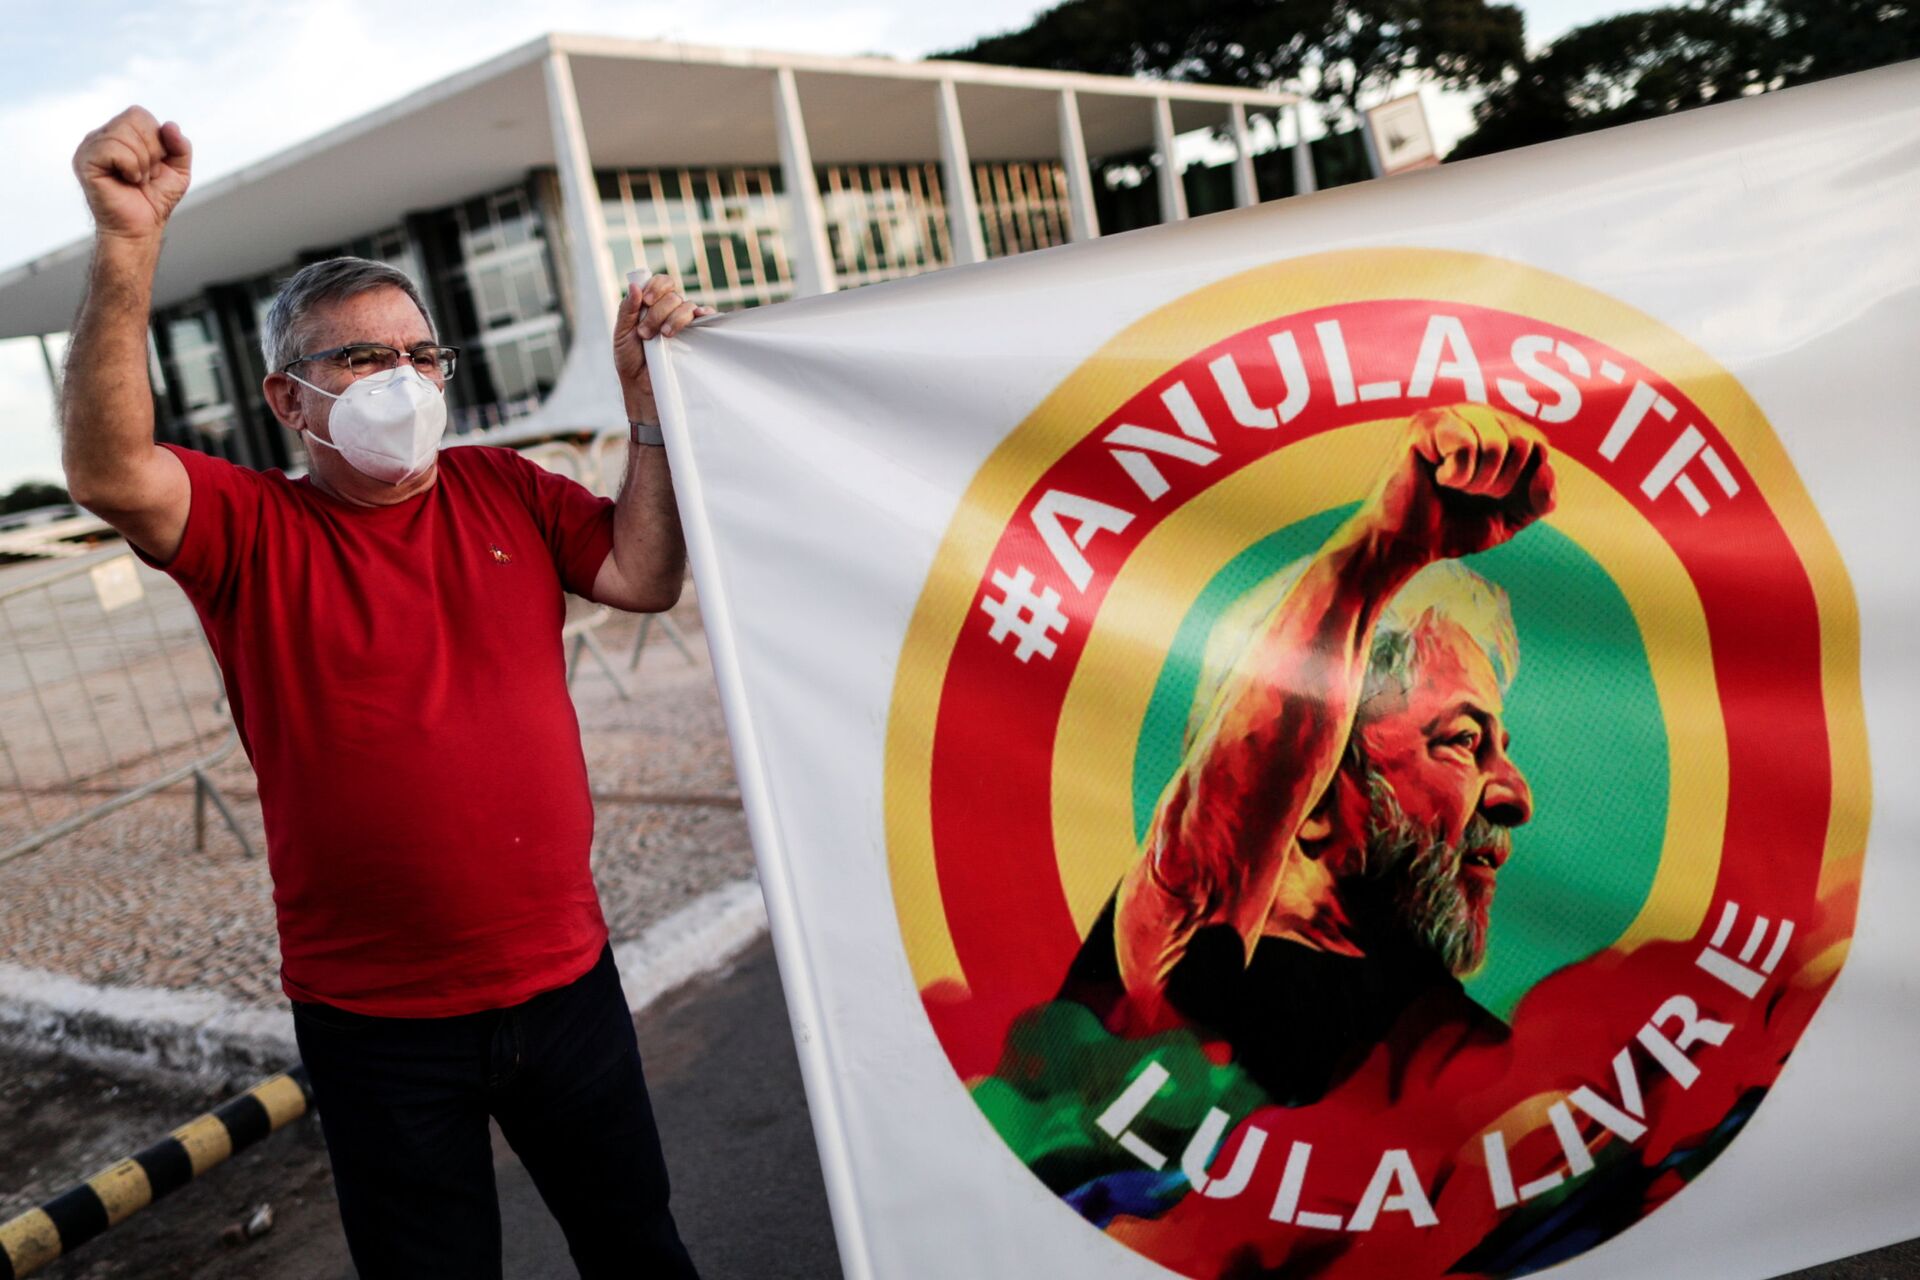 Justiça Federal absolve ex-presidente Lula em ação por corrupção na Operação Zelotes - Sputnik Brasil, 1920, 21.06.2021